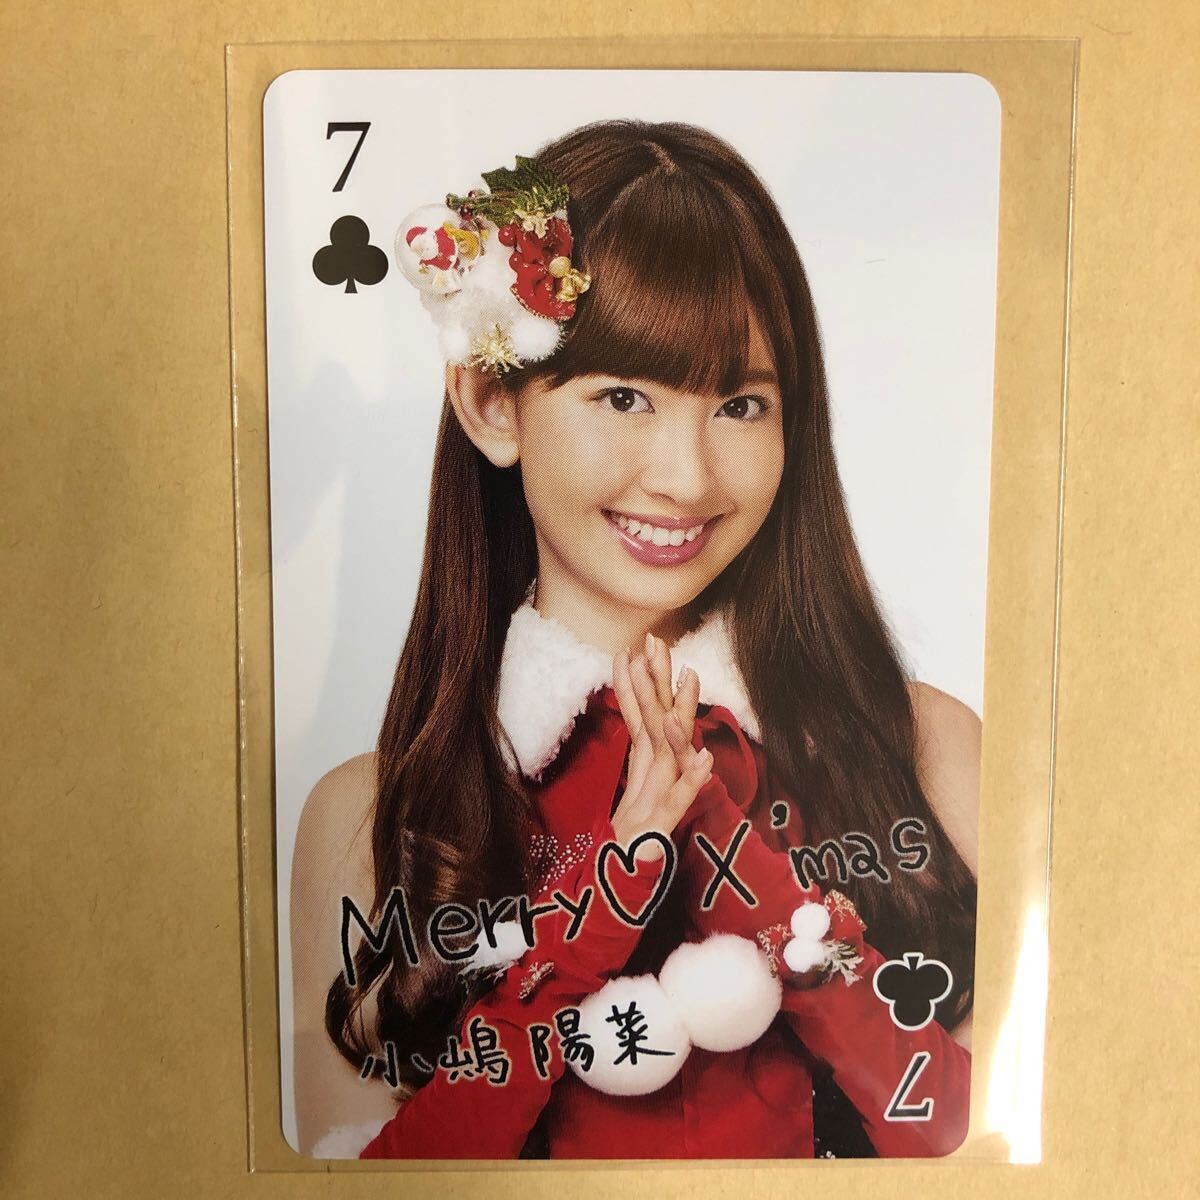 AKB48 小嶋陽菜 トレカ アイドル グラビア カード トランプ タレント トレーディングカード 7 クローバーの画像1